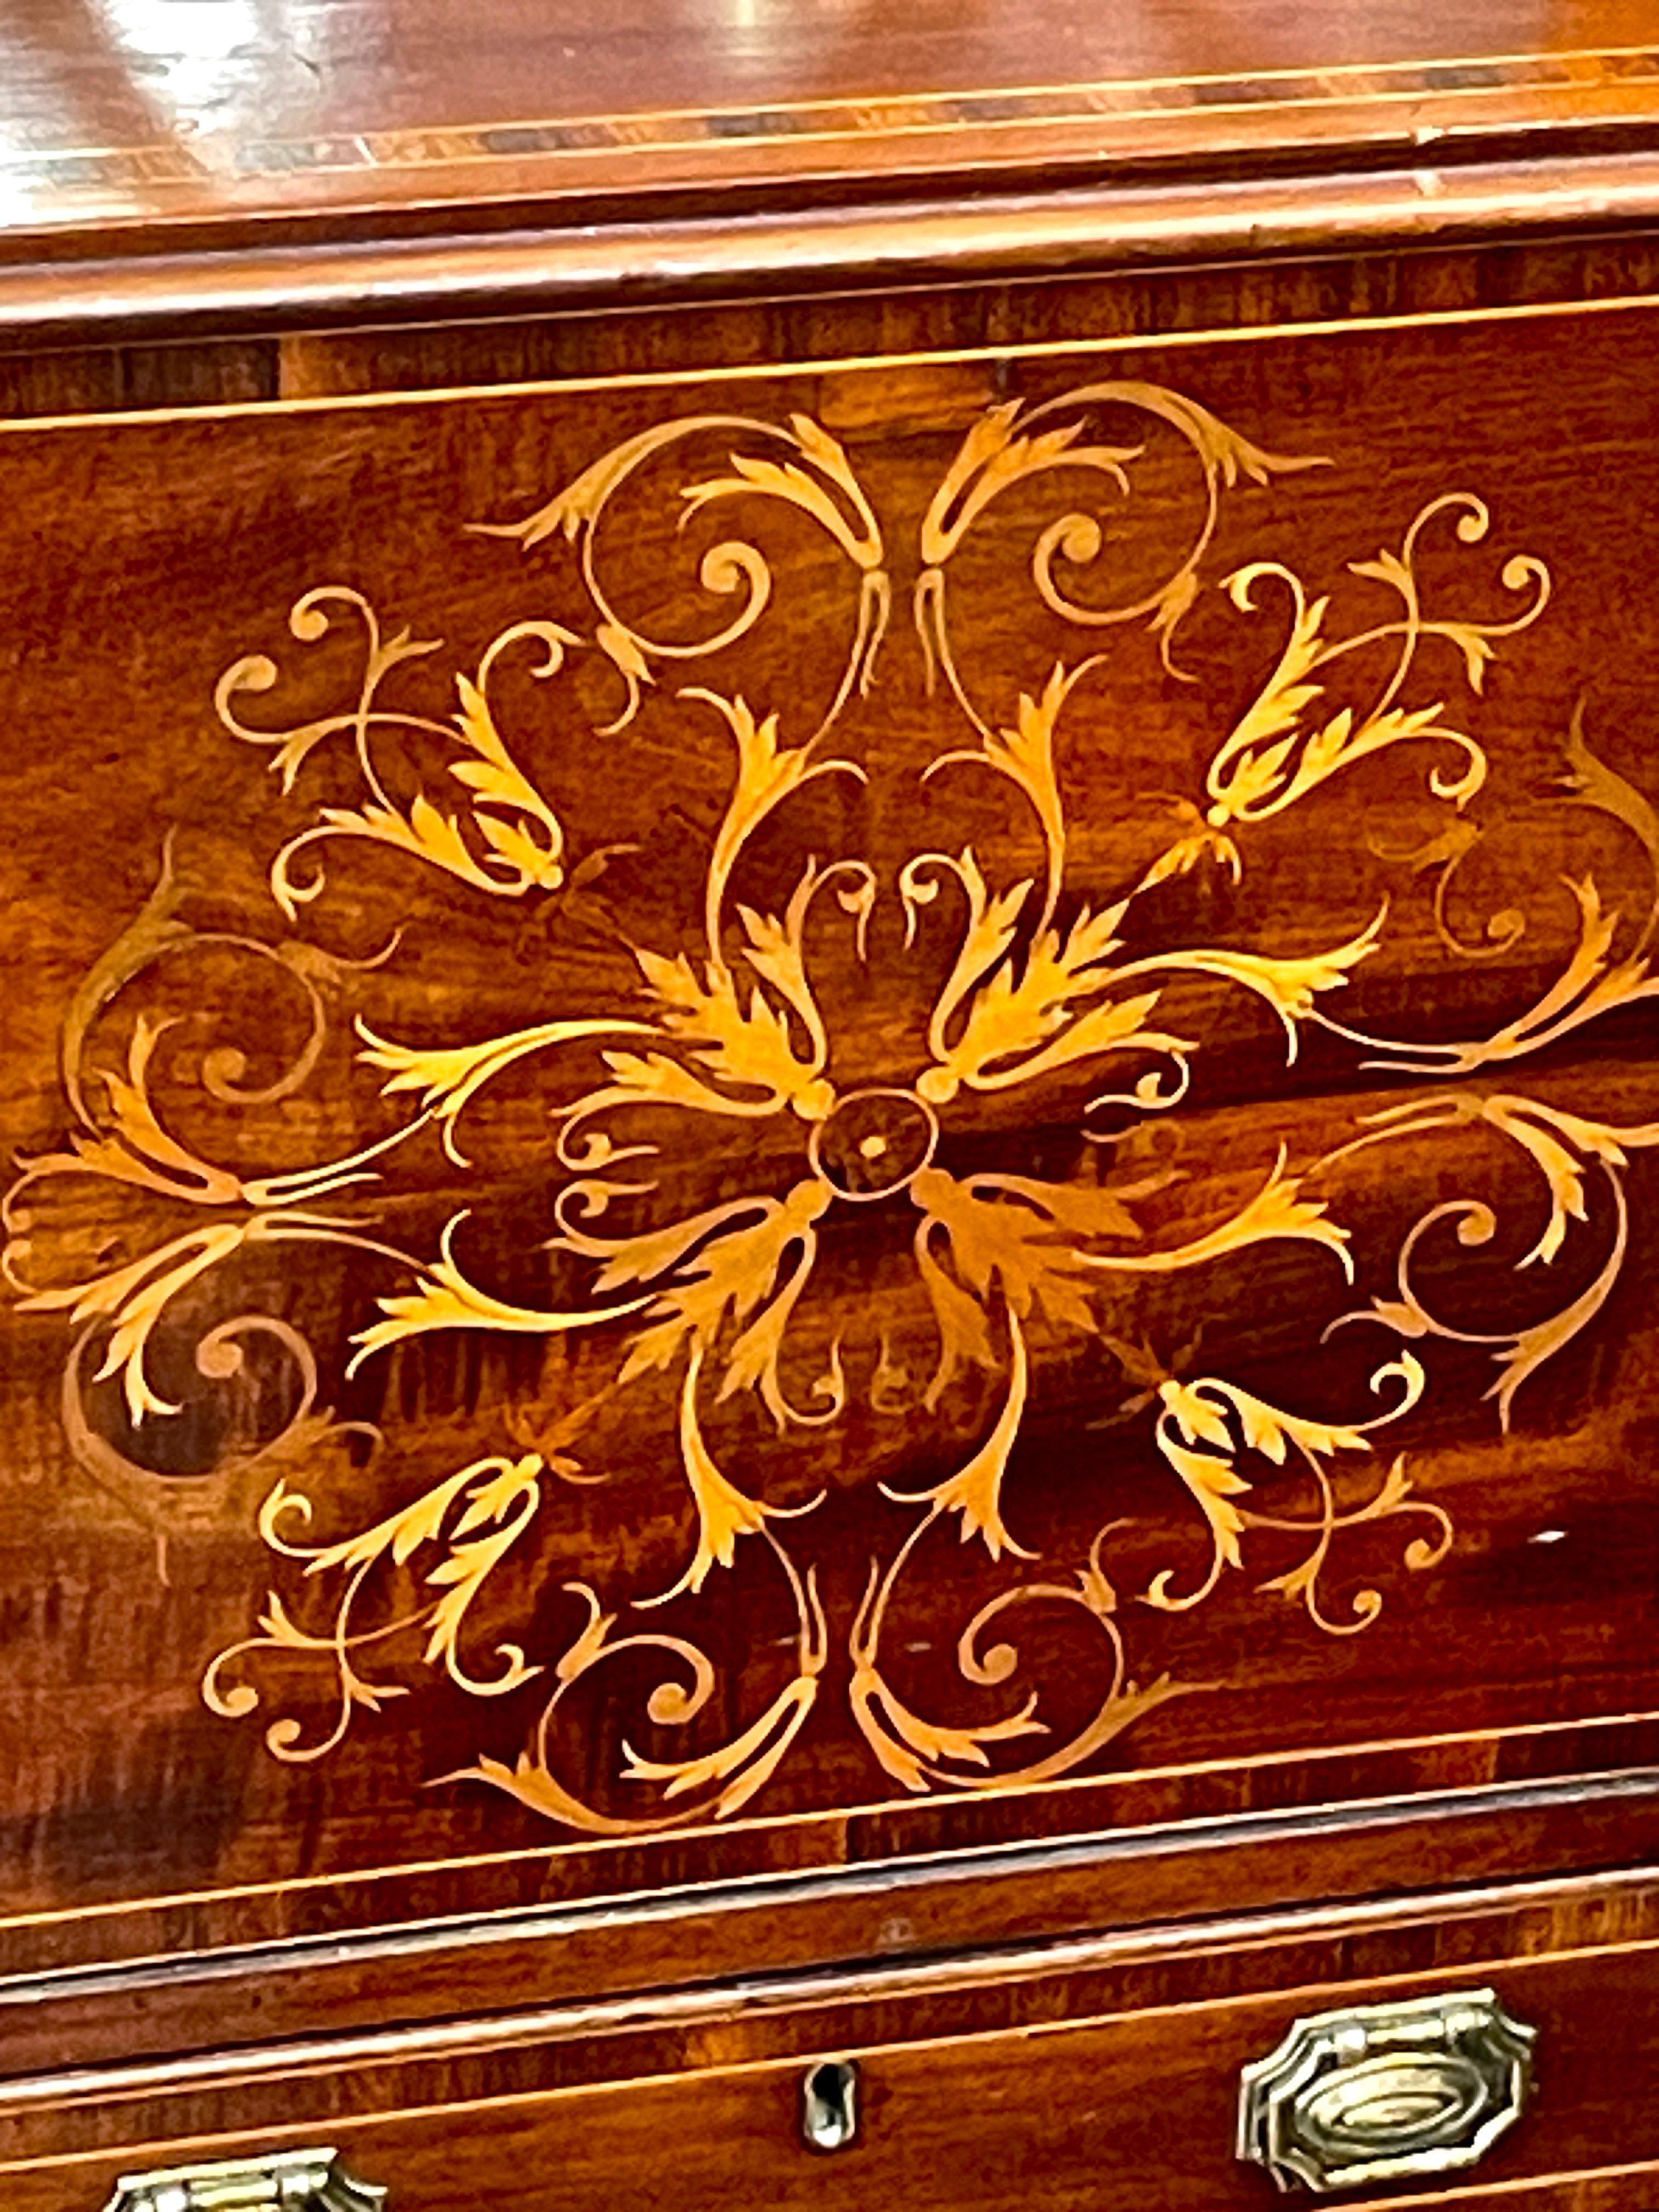 Dies ist eine wunderbare DIMINUTIVE antike englische hervorragend eingelegten Intarsien Mahagoni Edwardian Display Cabinet in der Hepplewhite-Stil.  Dieser Schrank ist entlang des Gesimses und entlang der rautenförmigen Einfassung der Glastür